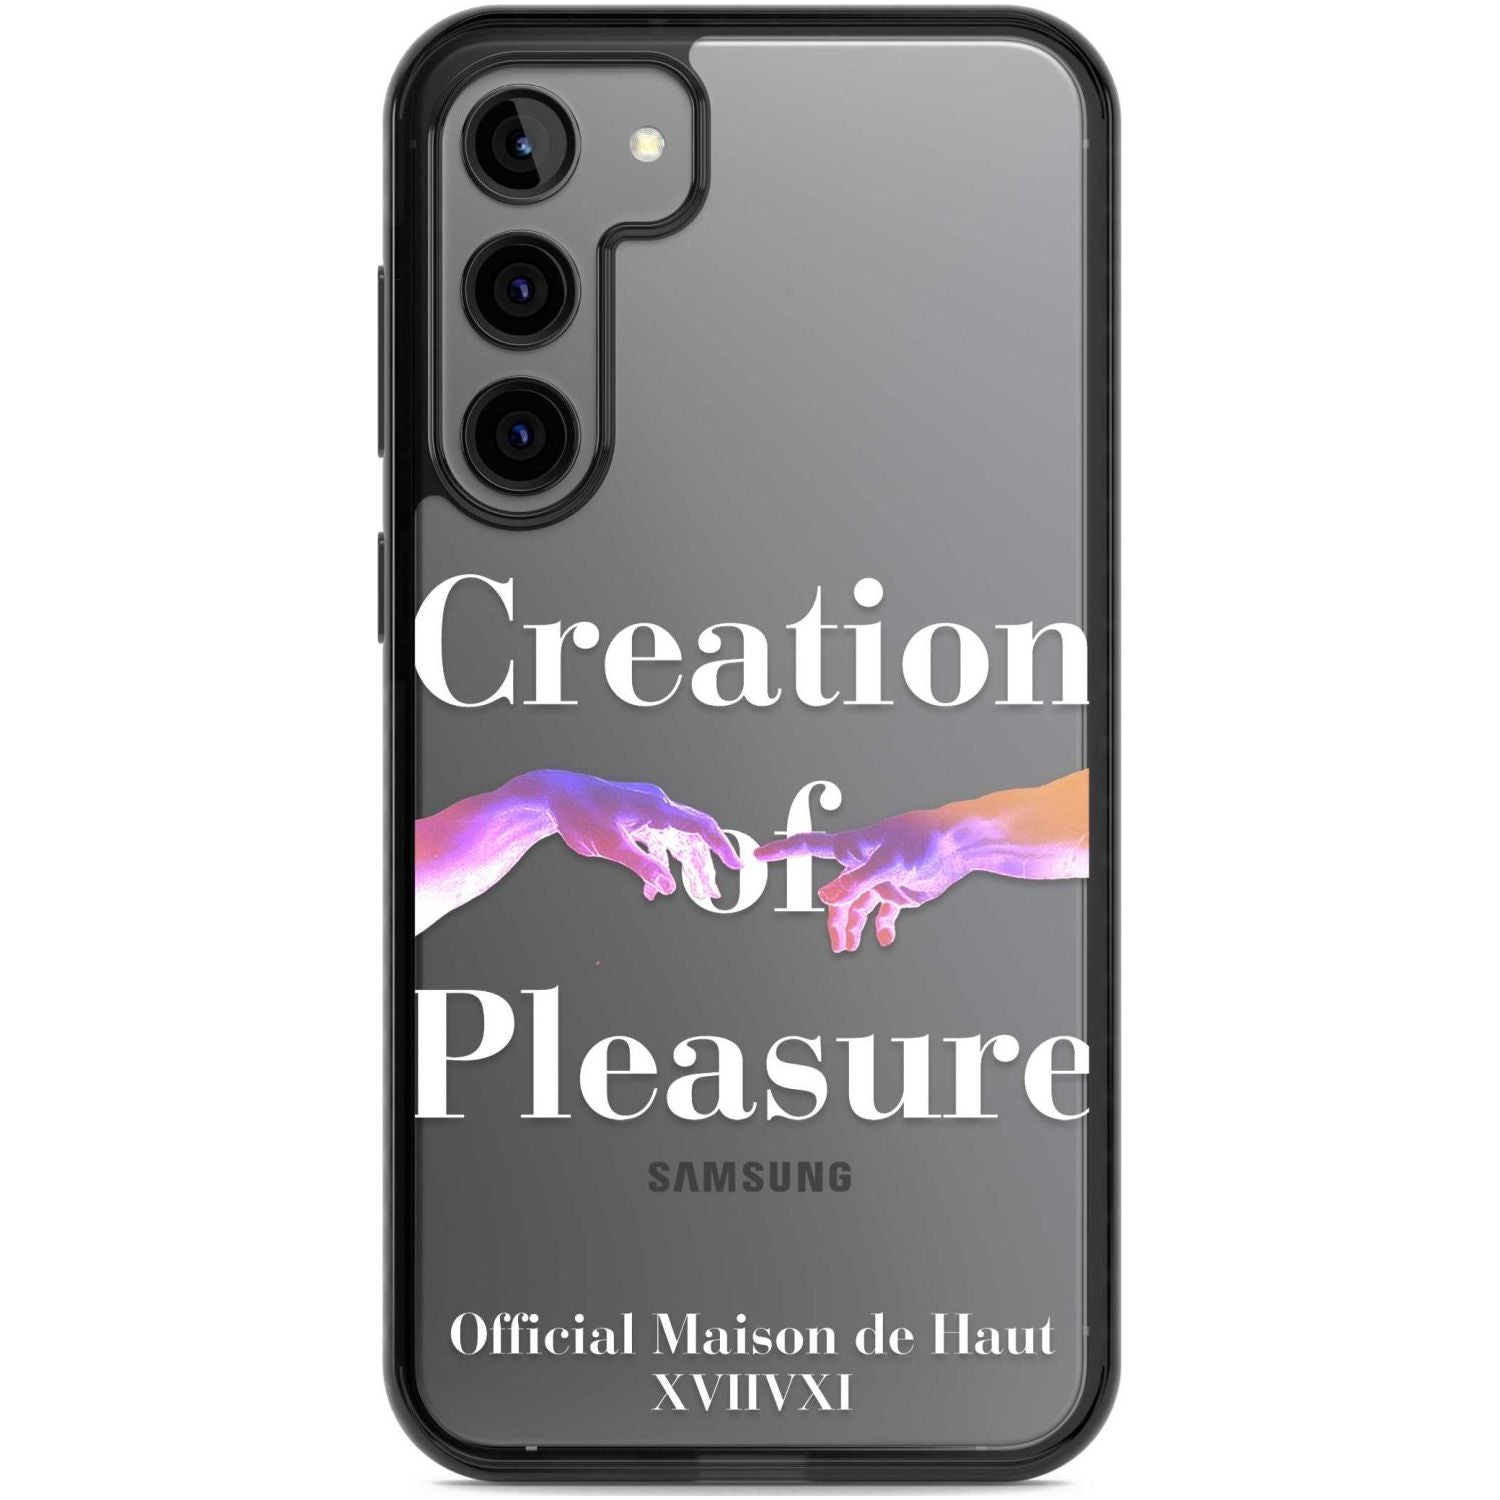 Creation of Pleasure